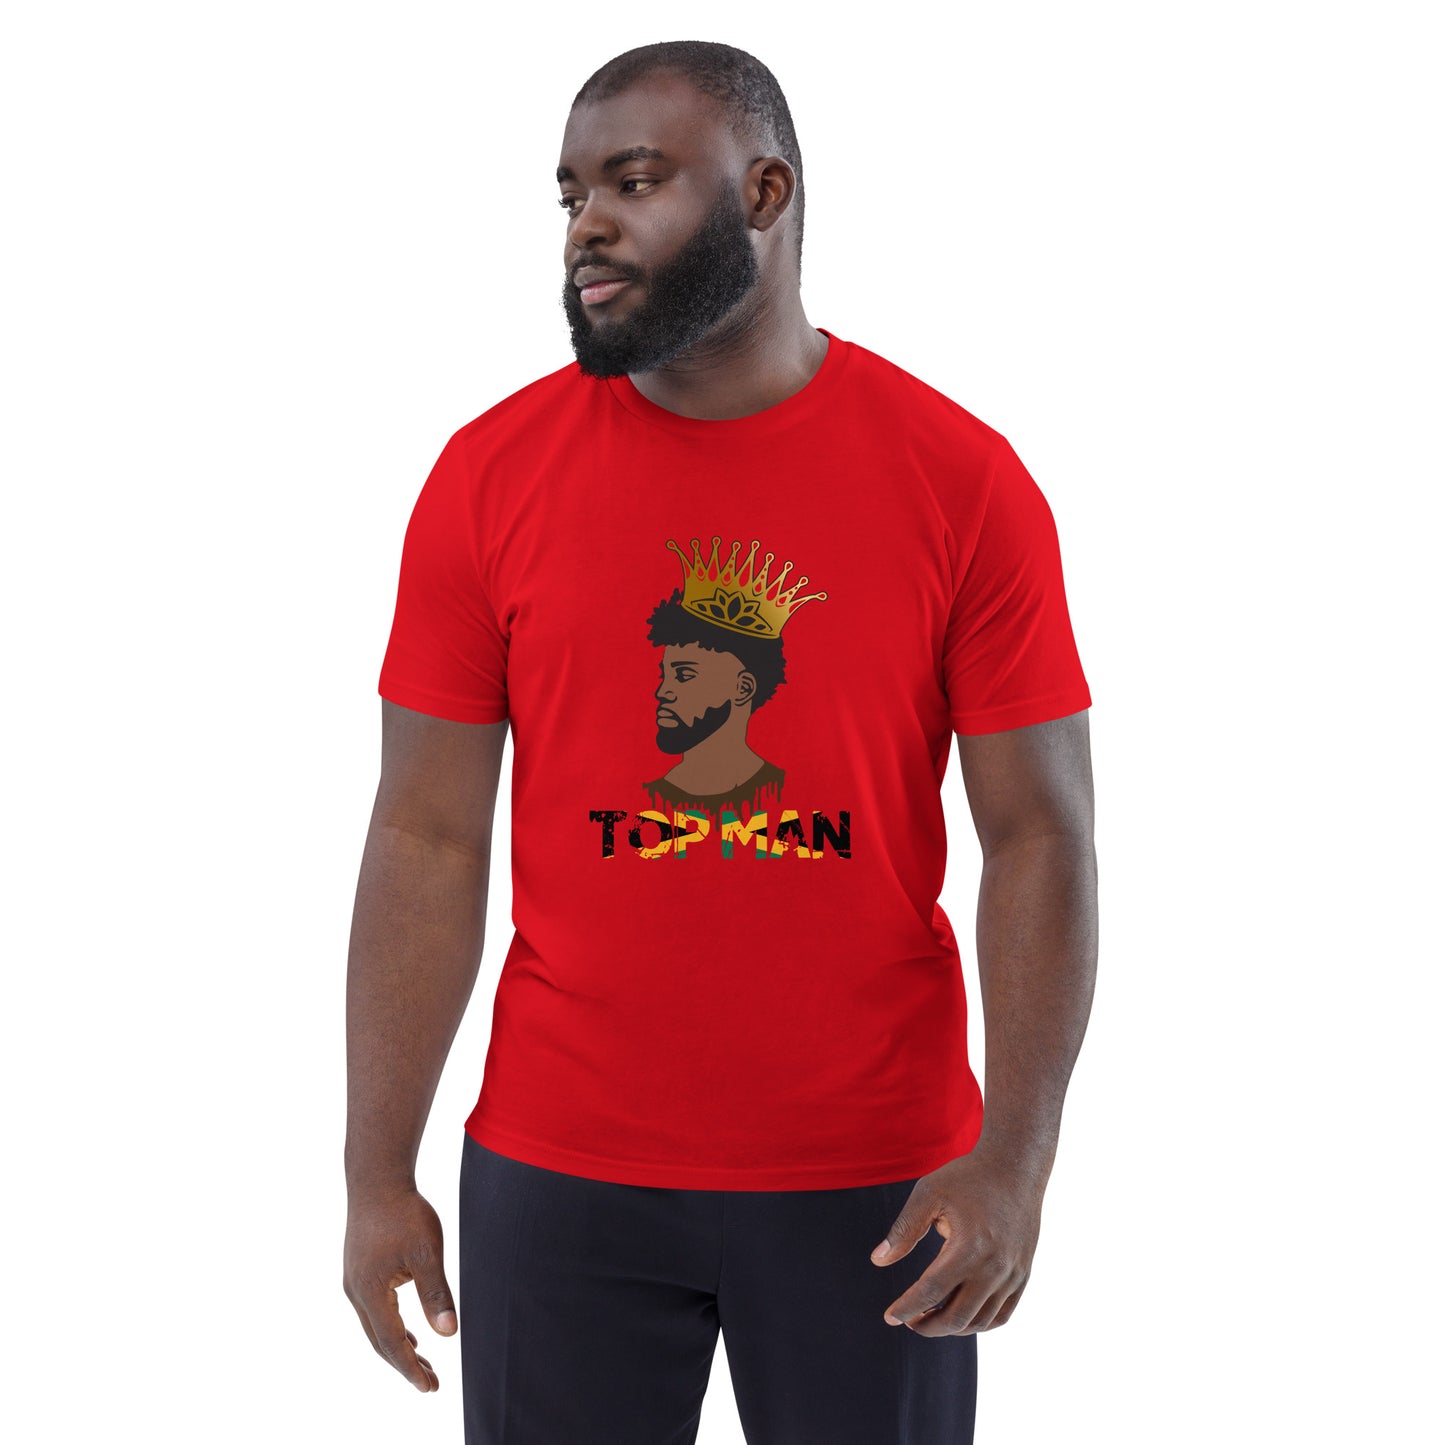 Jamaican Top Man organic cotton t-shirt